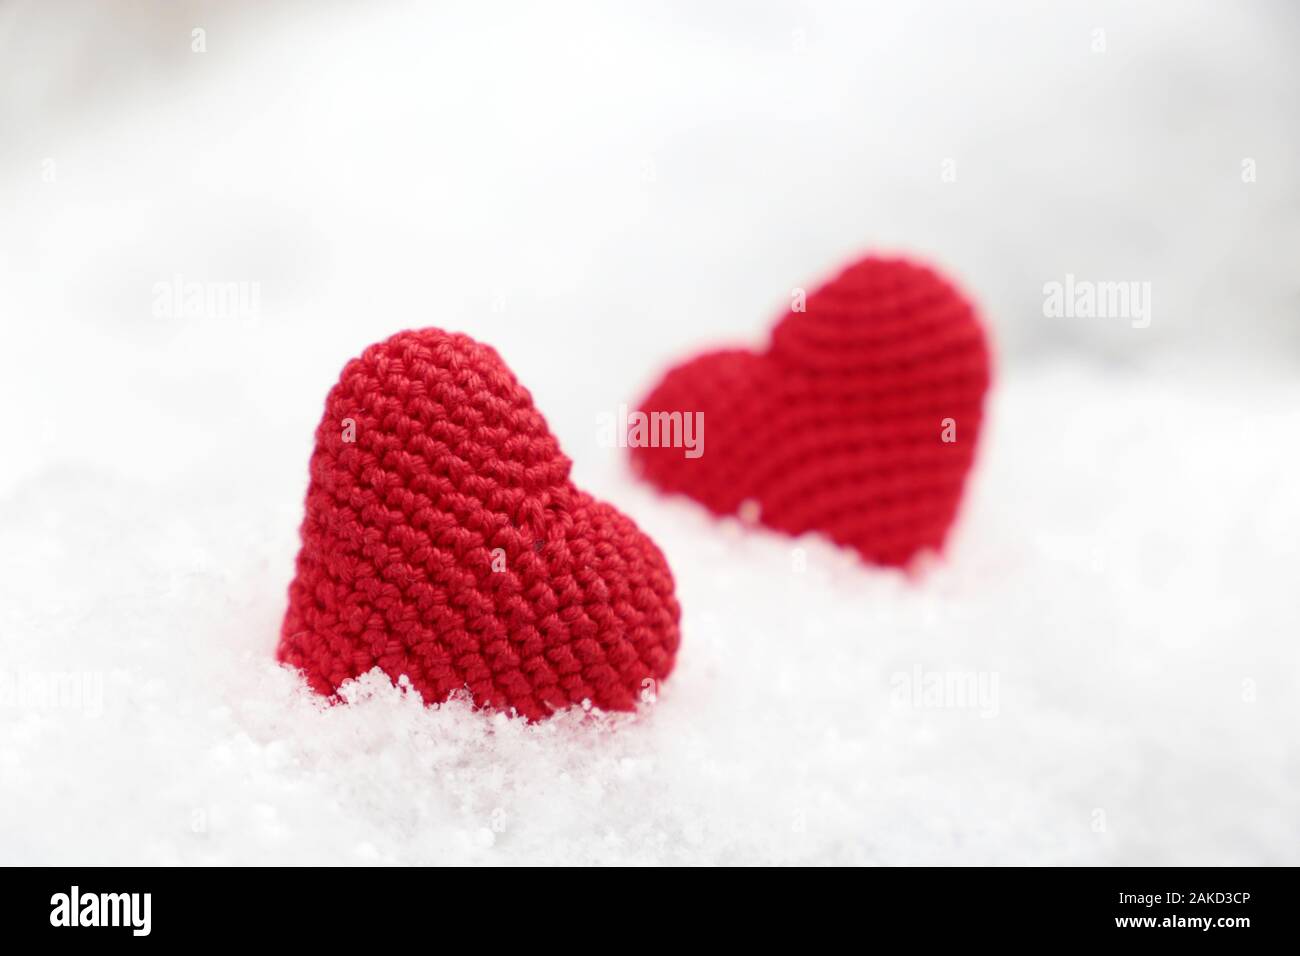 Liebe Herz, Valentinstag Karte, zwei Rote gestrickt Symbole der Leidenschaft in den Schnee. Hintergrund für romantische Veranstaltung, Feier oder Winter Wetter Stockfoto